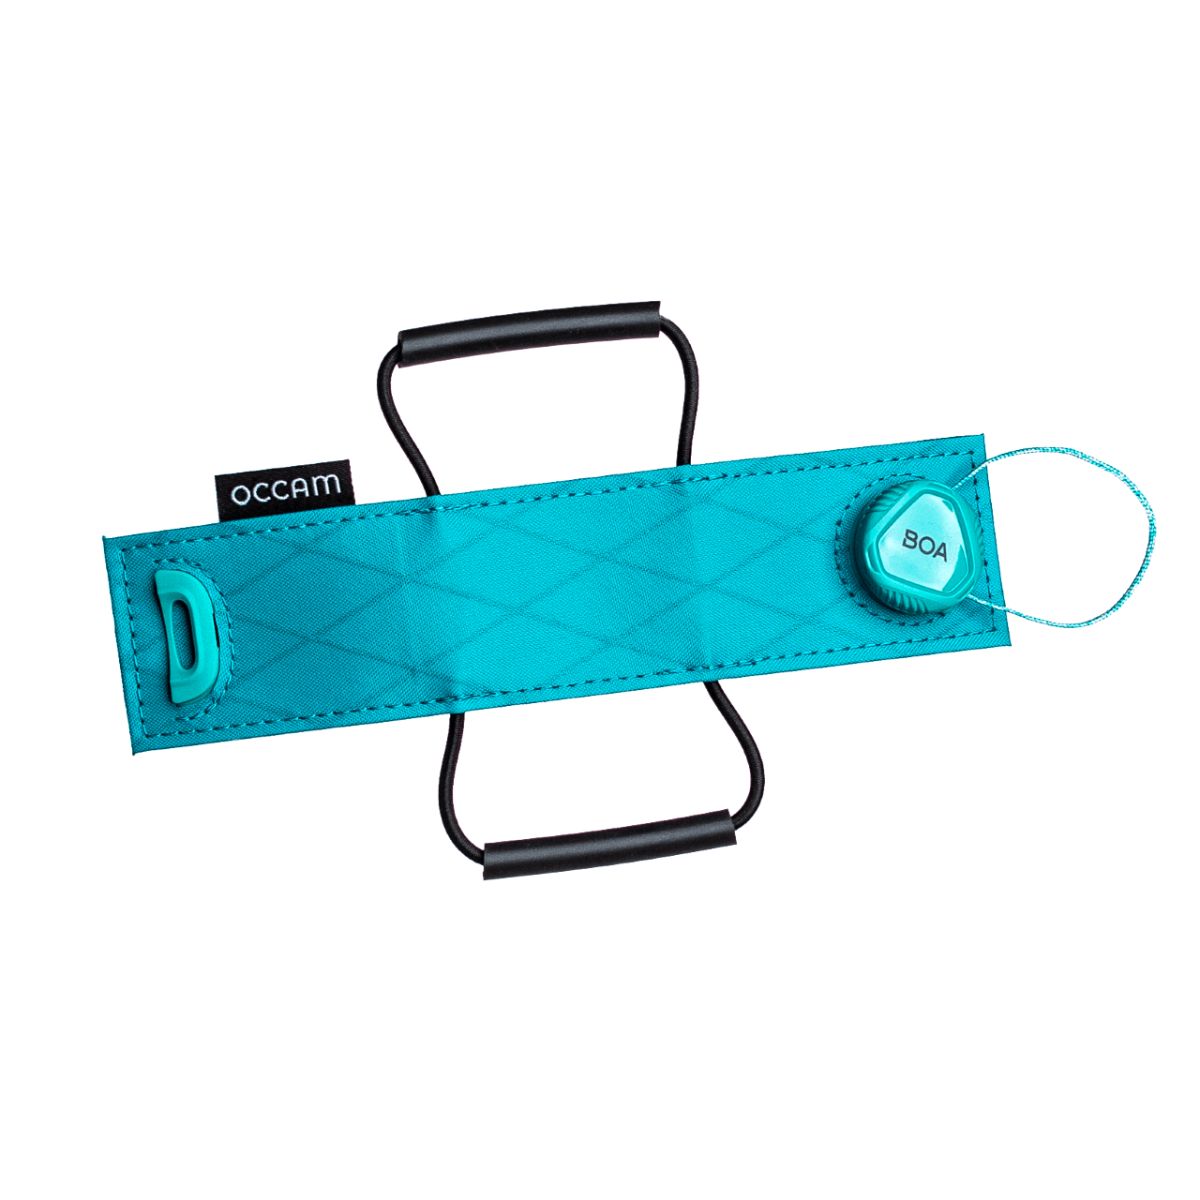 Occam Designs Apex Strap accesory strap Agave